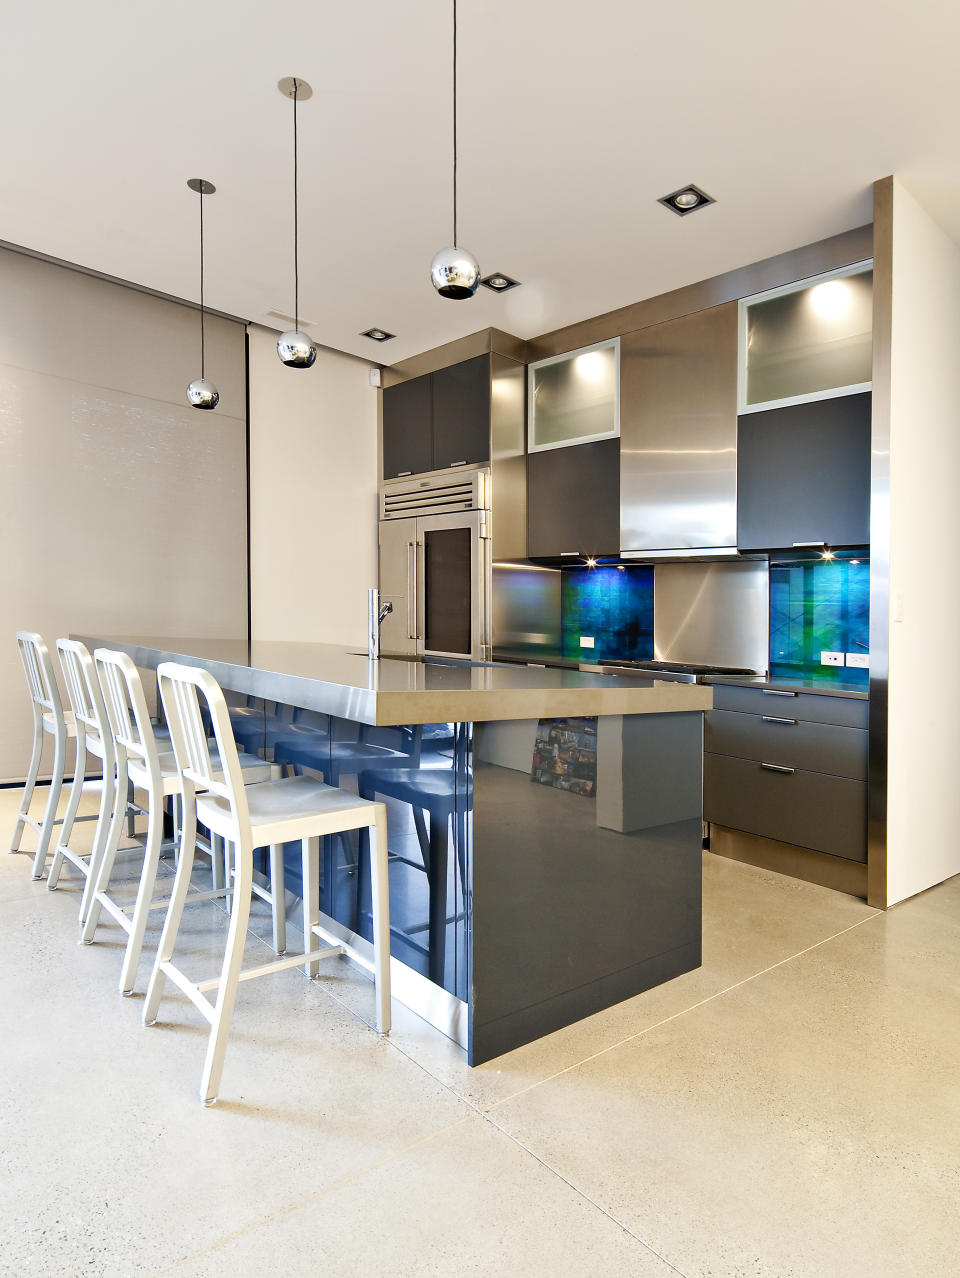 Gambar Desain Interior Minimalis: Gambar Dapur Minimalis- Design Rumah